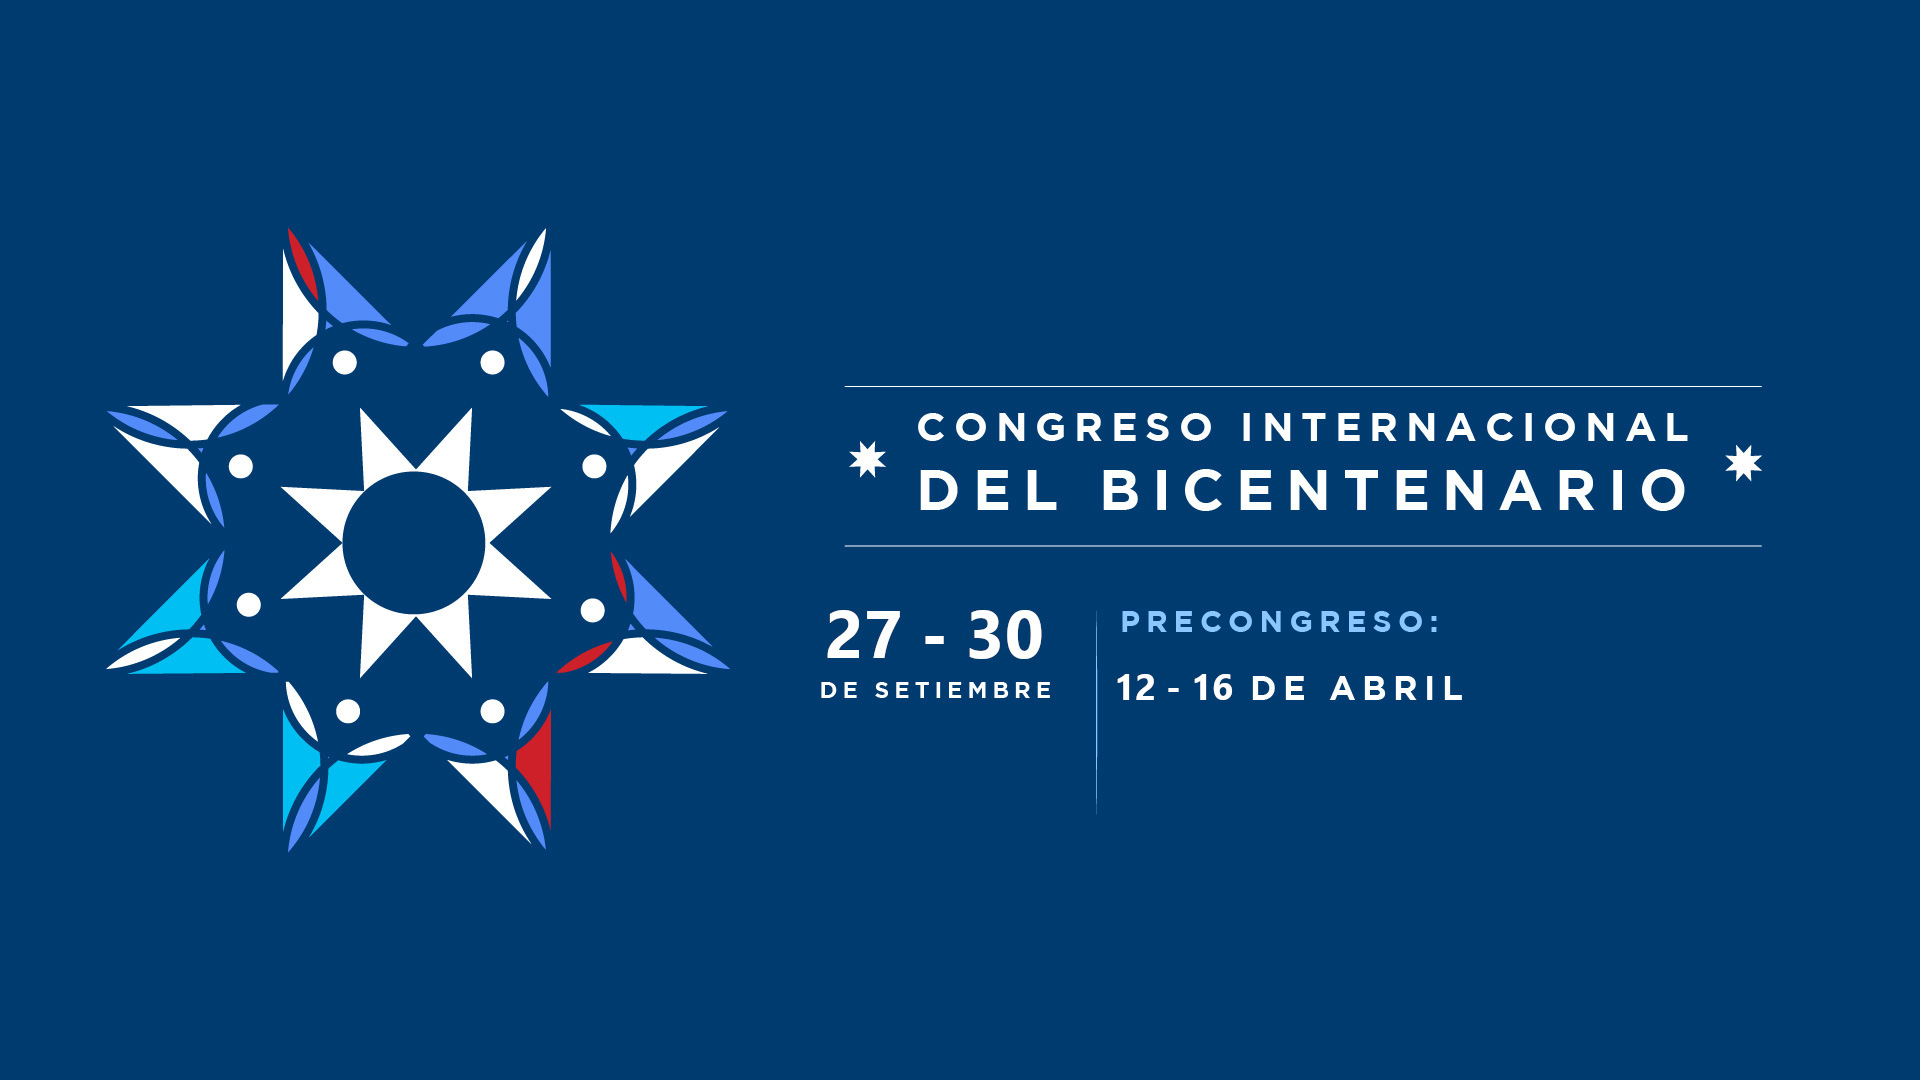 Puede seguir los detalles del precongreso y del congreso en la página web www.congresohumanismo.ucr.ac.cr